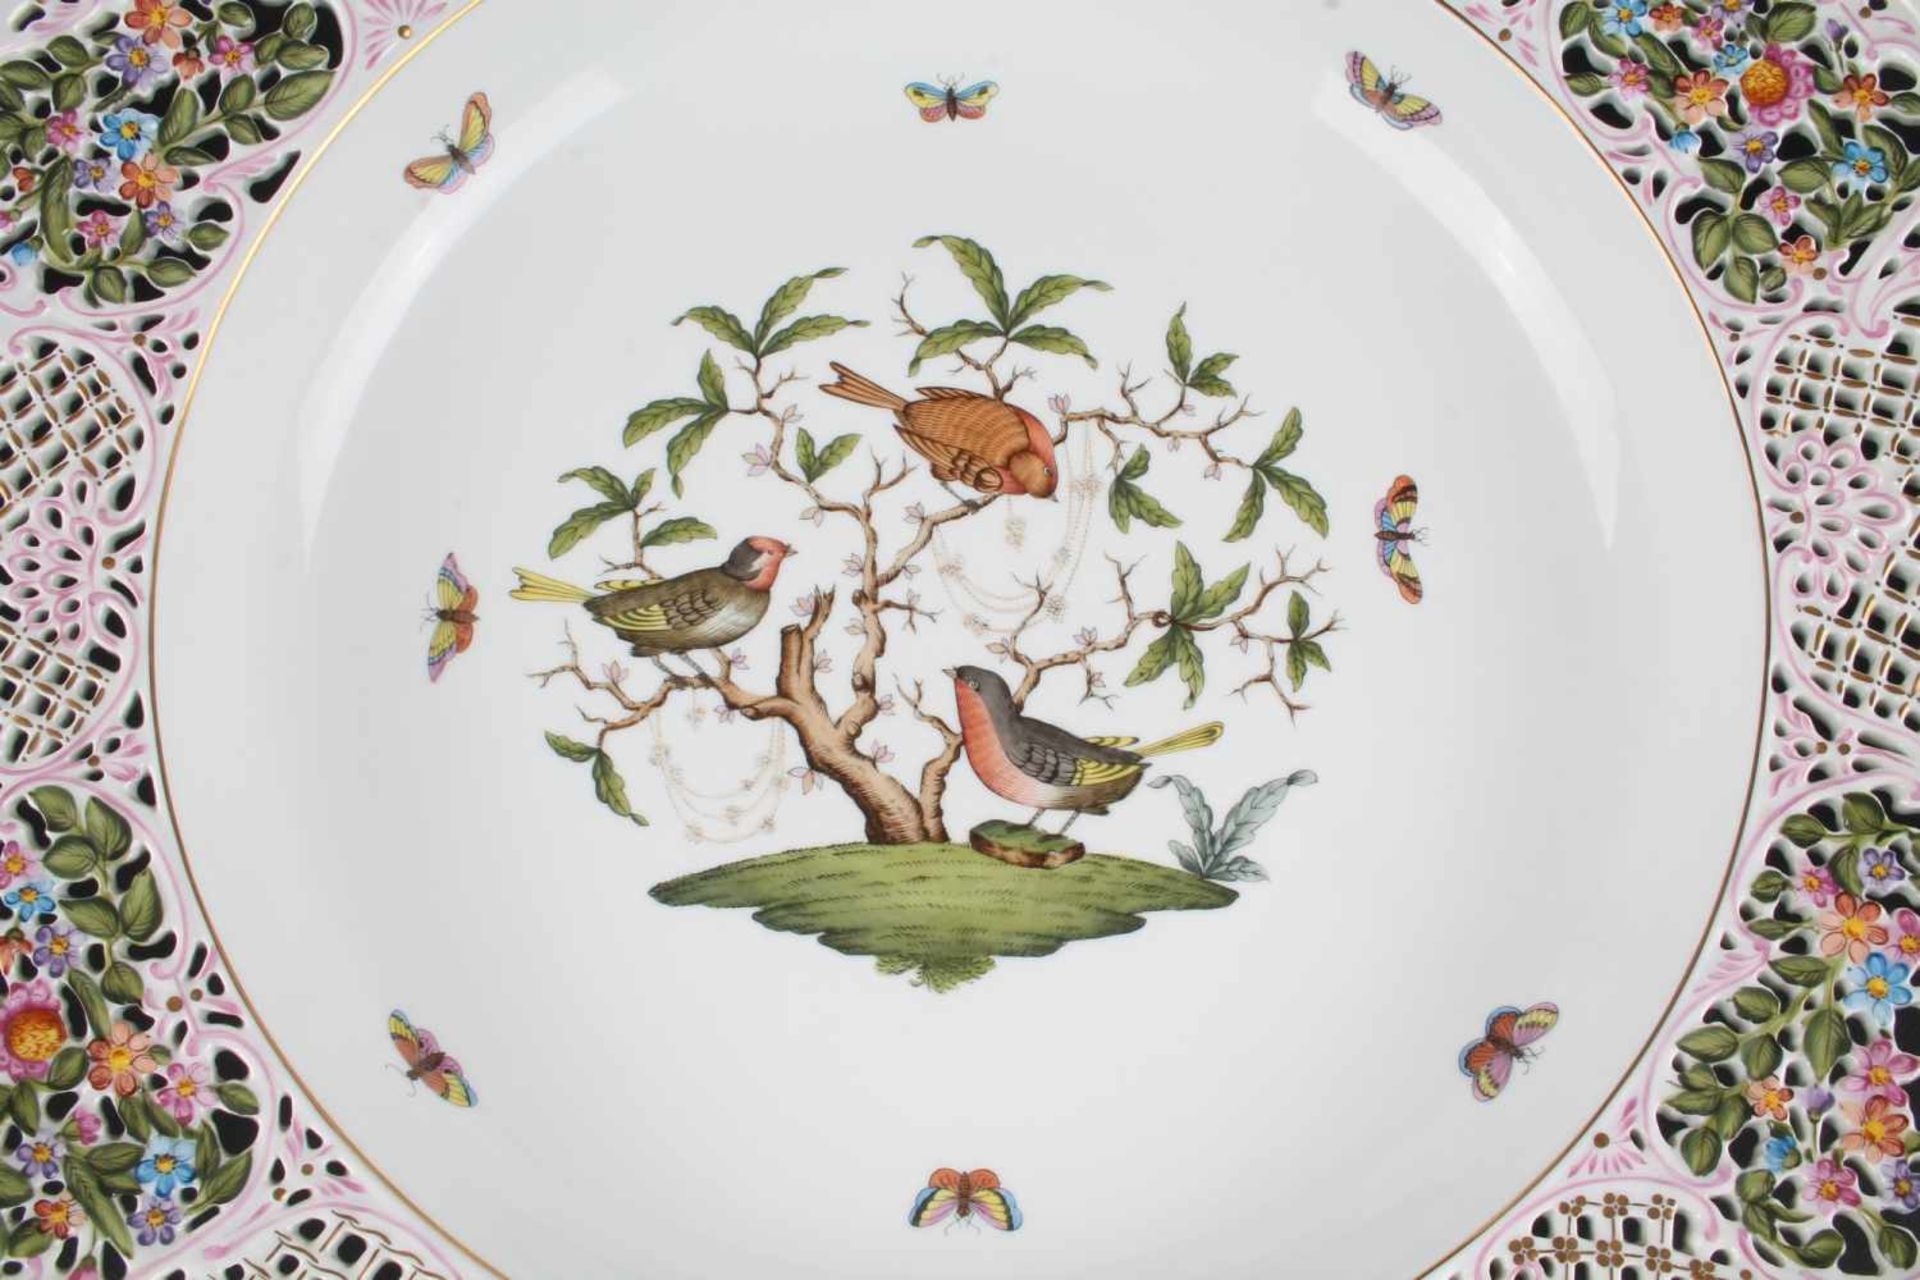 Riesige Prunkschale - Herend Rothschild #8400, bowl,Porzellan, Ungarn 20. Jahrhundert, Dekor - Bild 3 aus 6